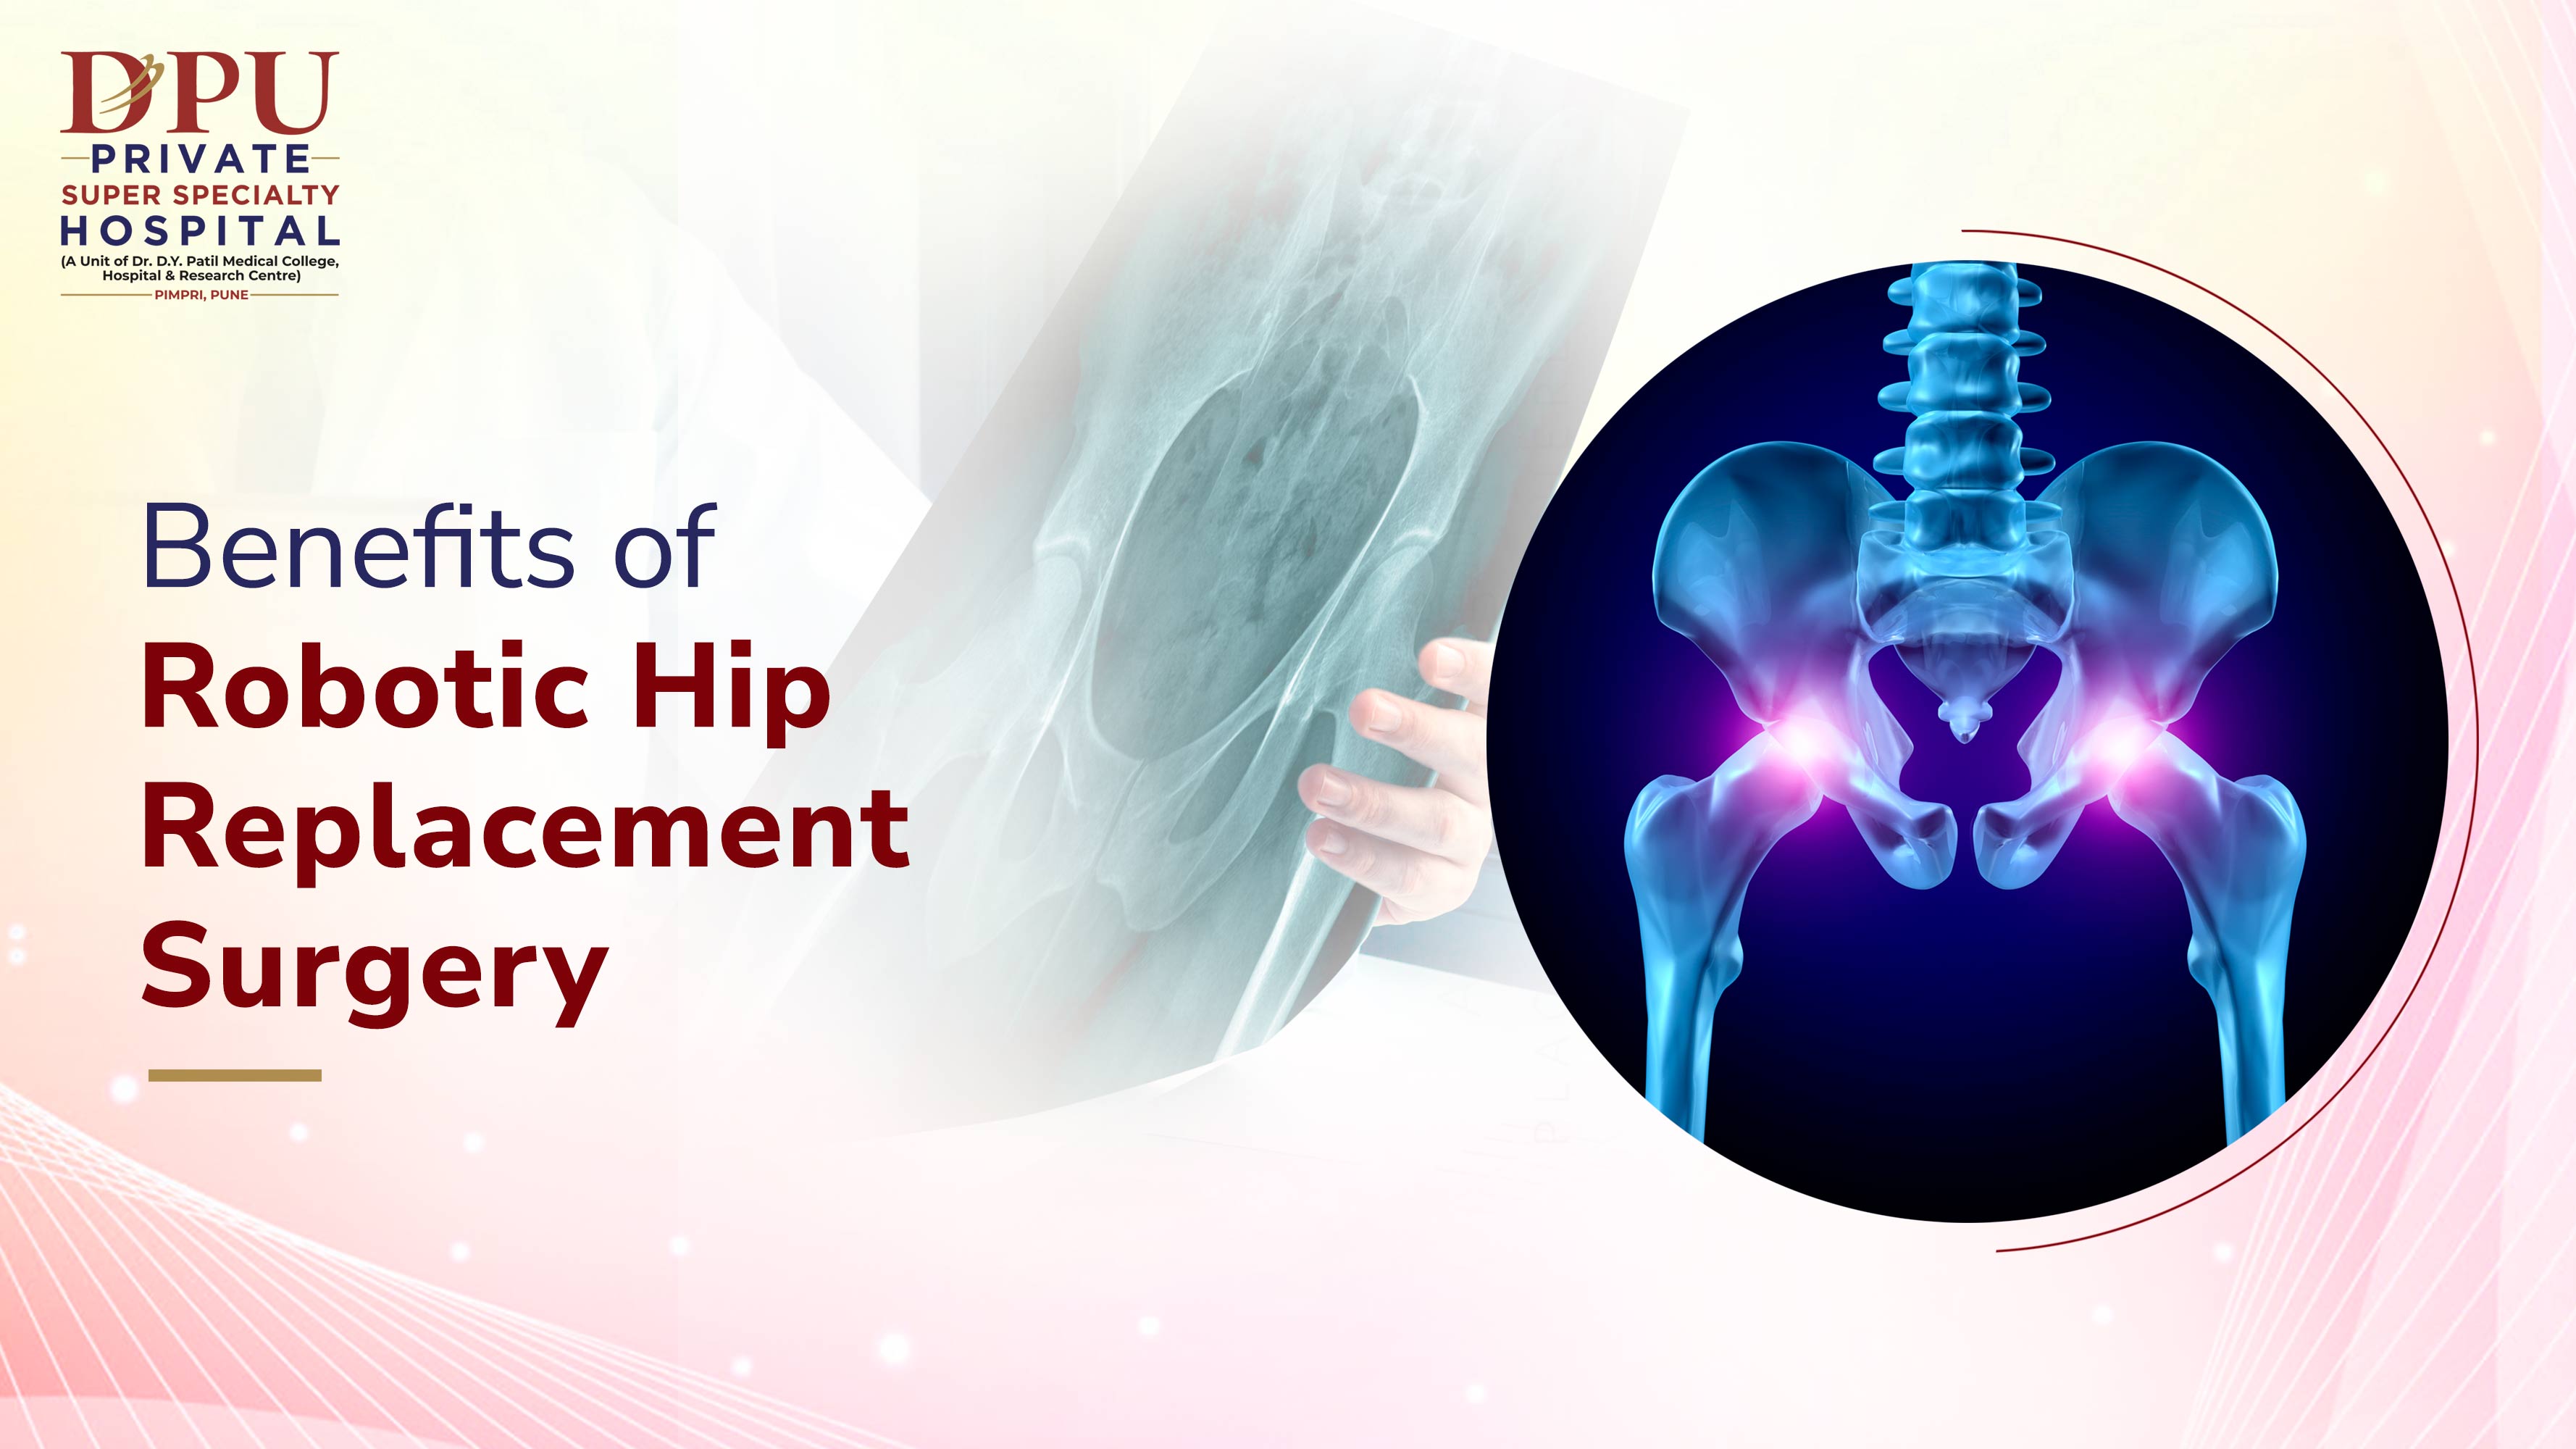 Robotic Hip Replacement Surgery Benefits